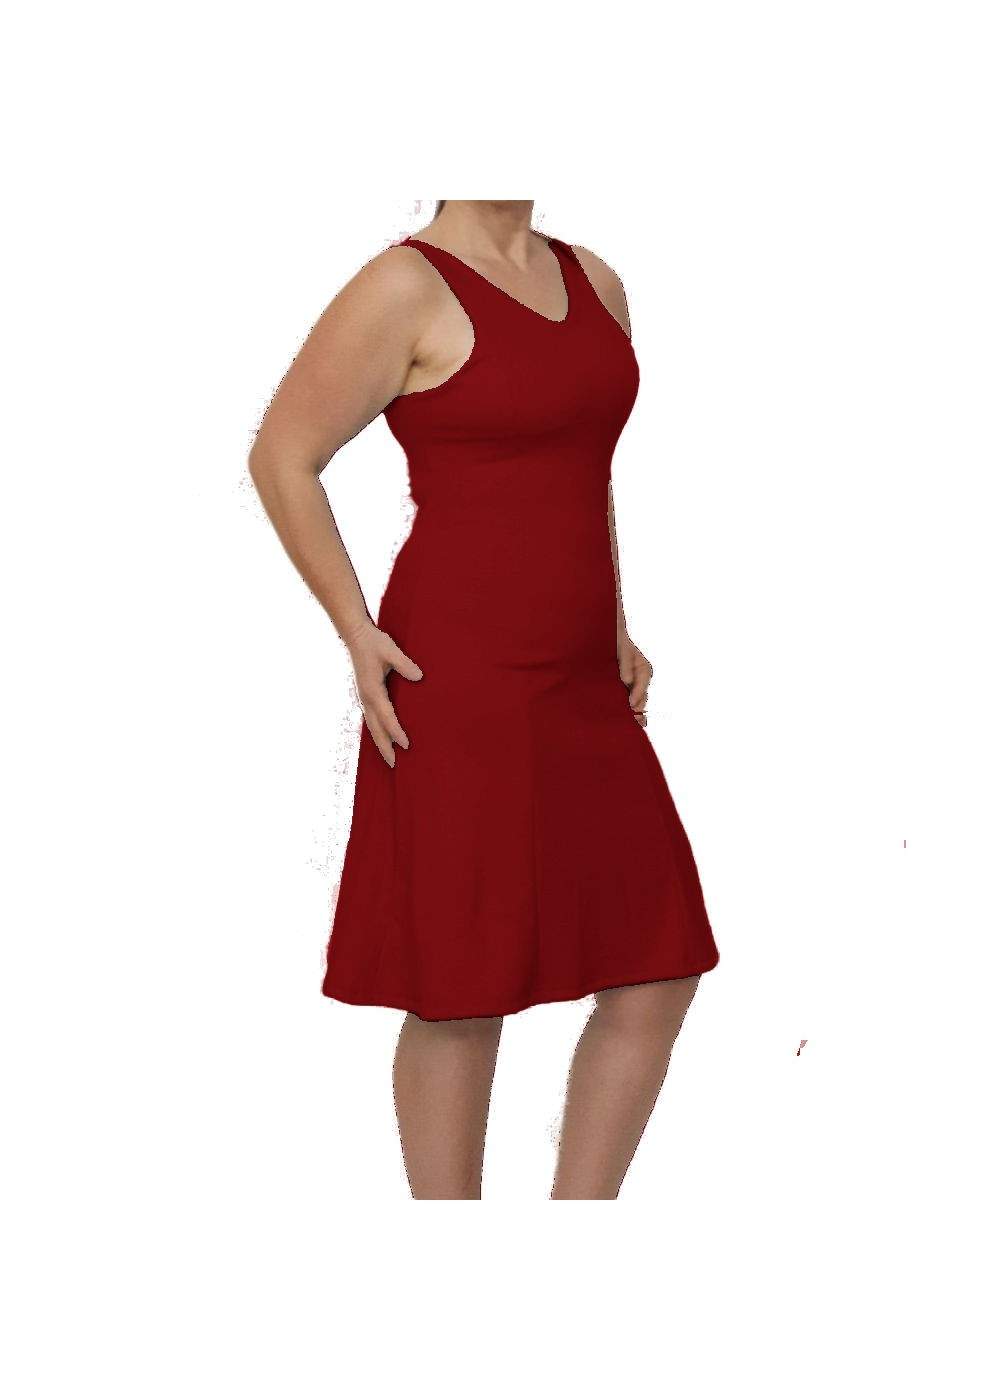 black week Save 15% Red strap dress with V-neck - 